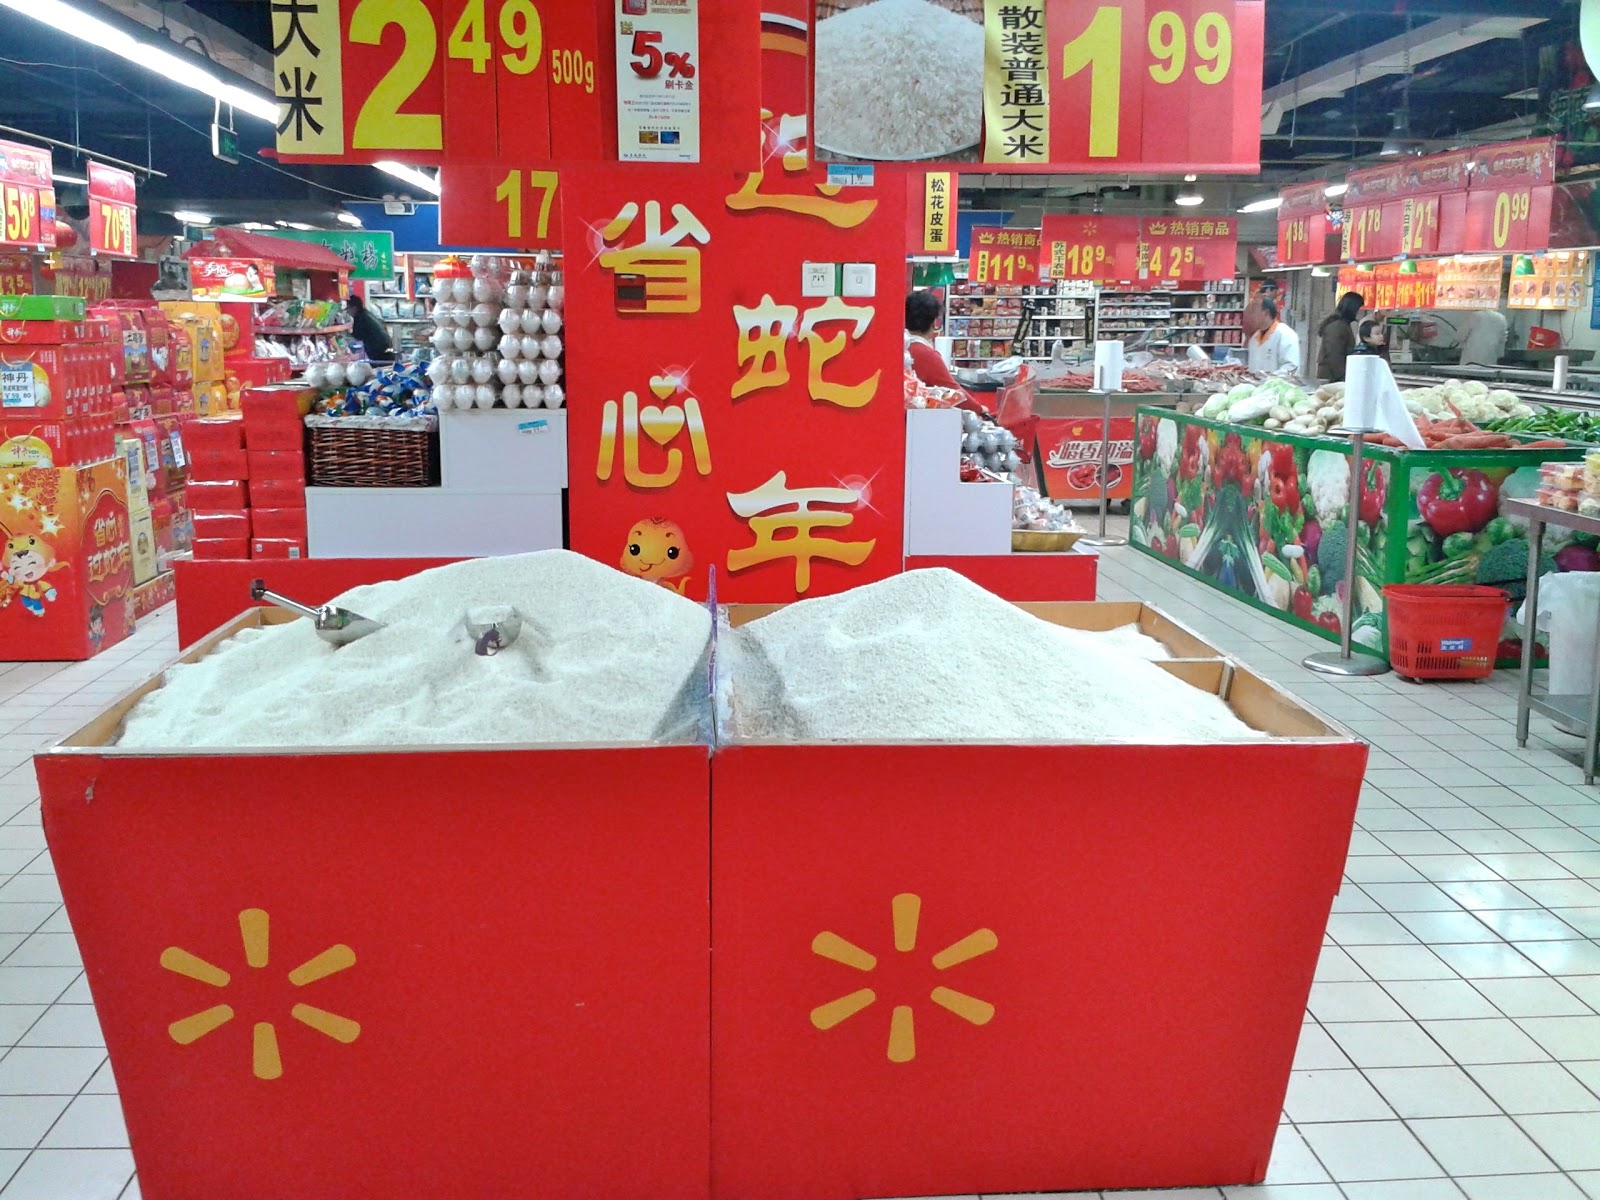 Escala Pekín: Ir un supermercado en China